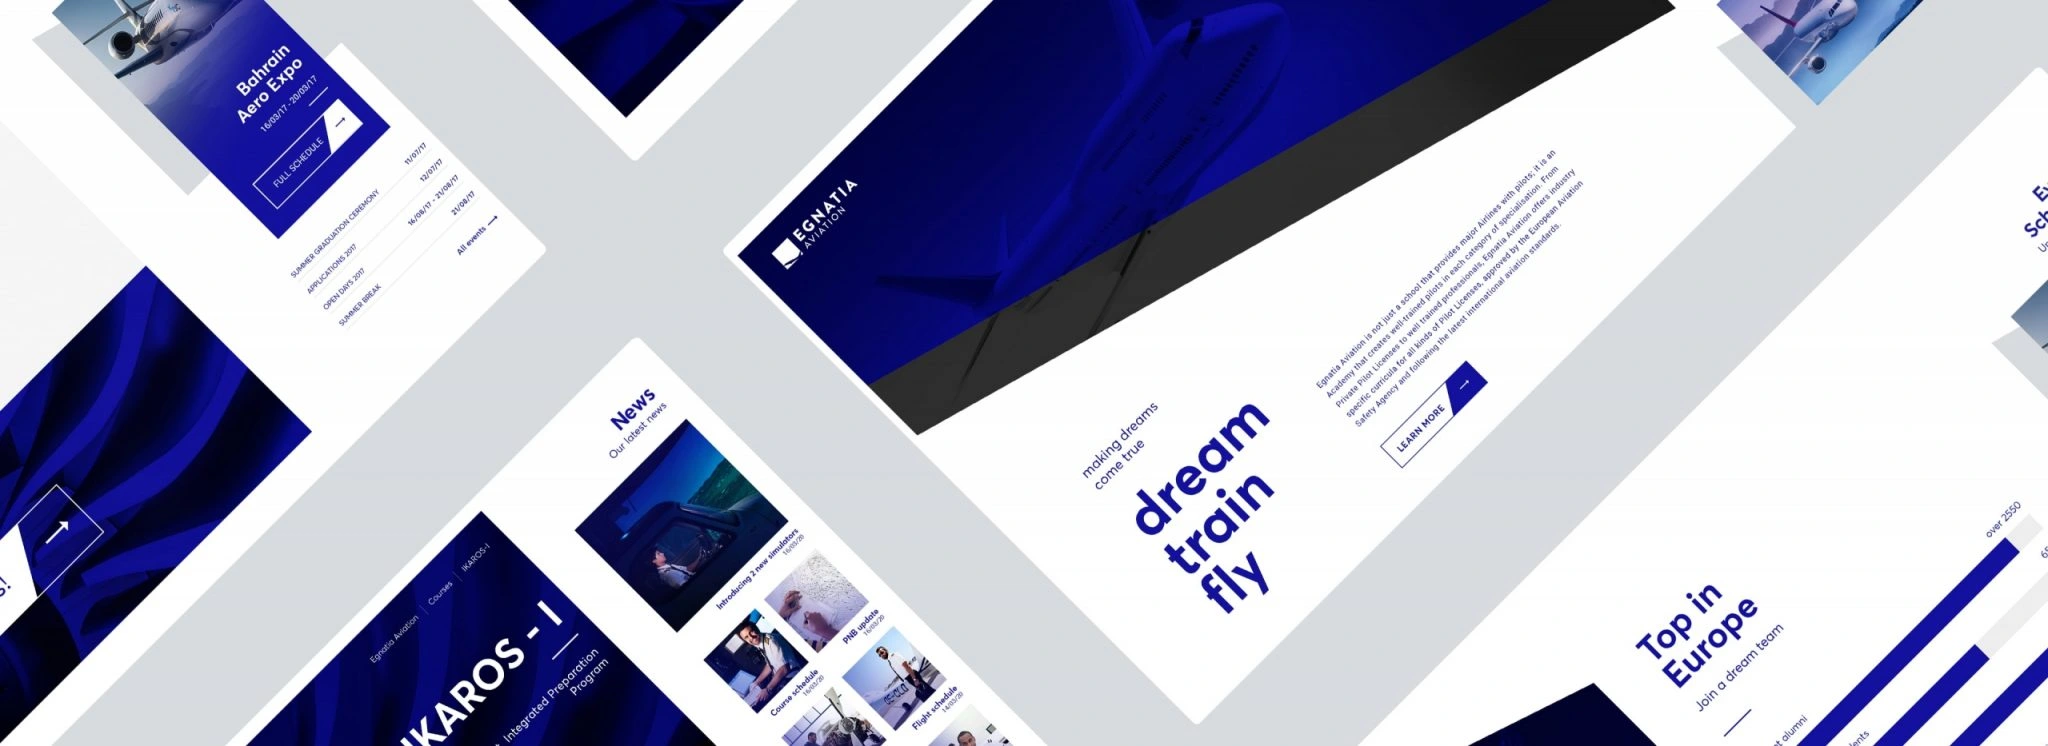 Σχεδίασμός ιστοσελίδας - Κατασκευή ιστοσελίδας - Egnatia Aviation - Σχολή πιλότων - Artware -Κατασκευή ιστοσελίδων